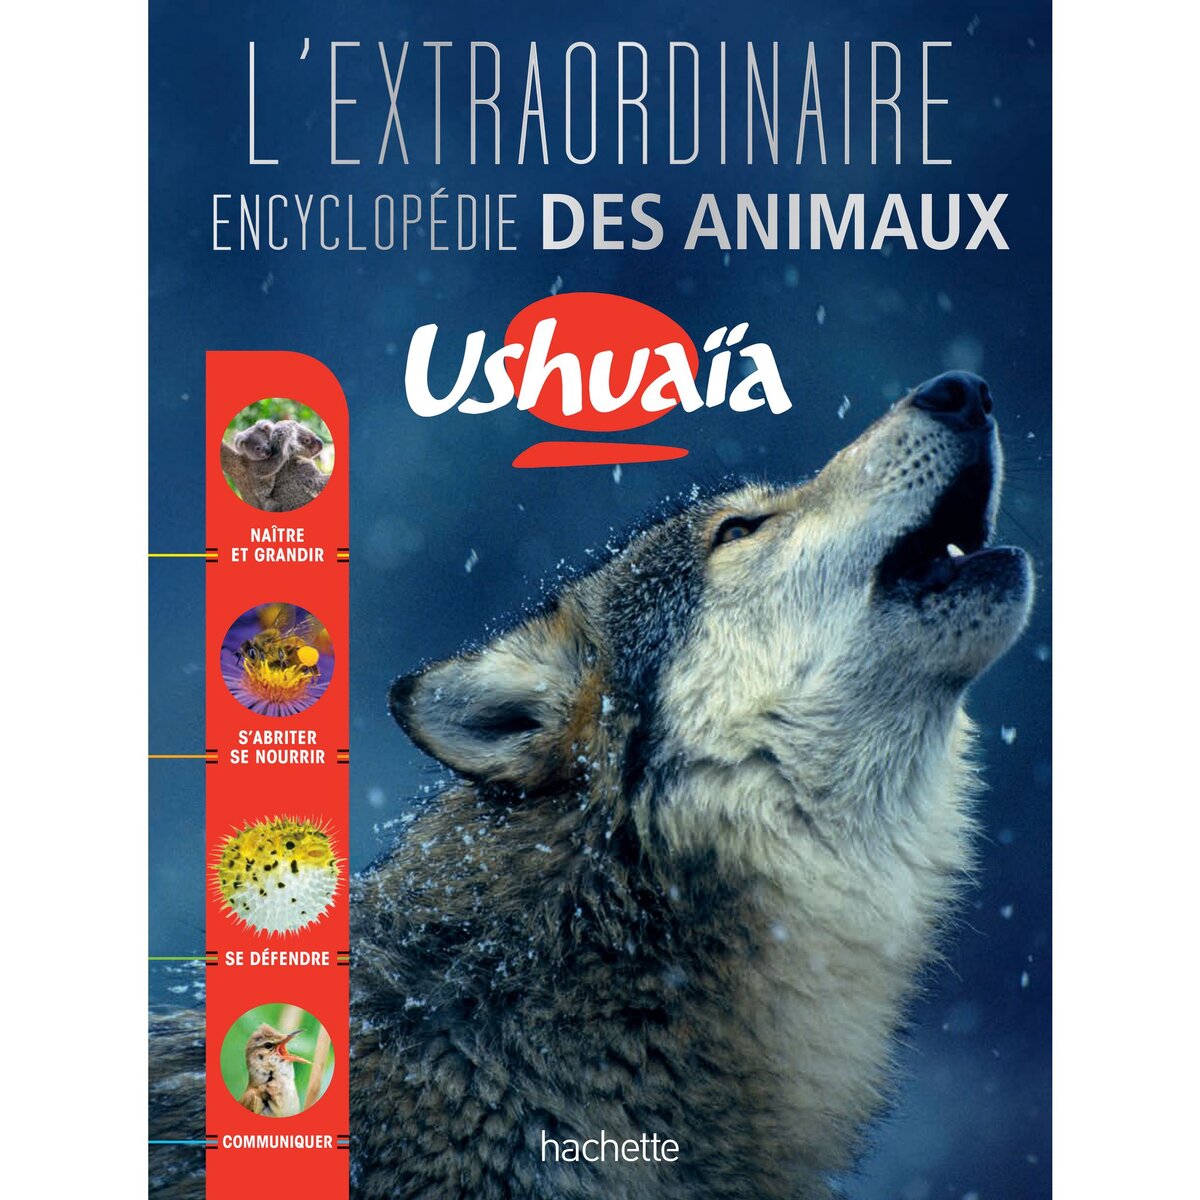 L'Extraordinaire encyclopédie Ushuaïa des animaux